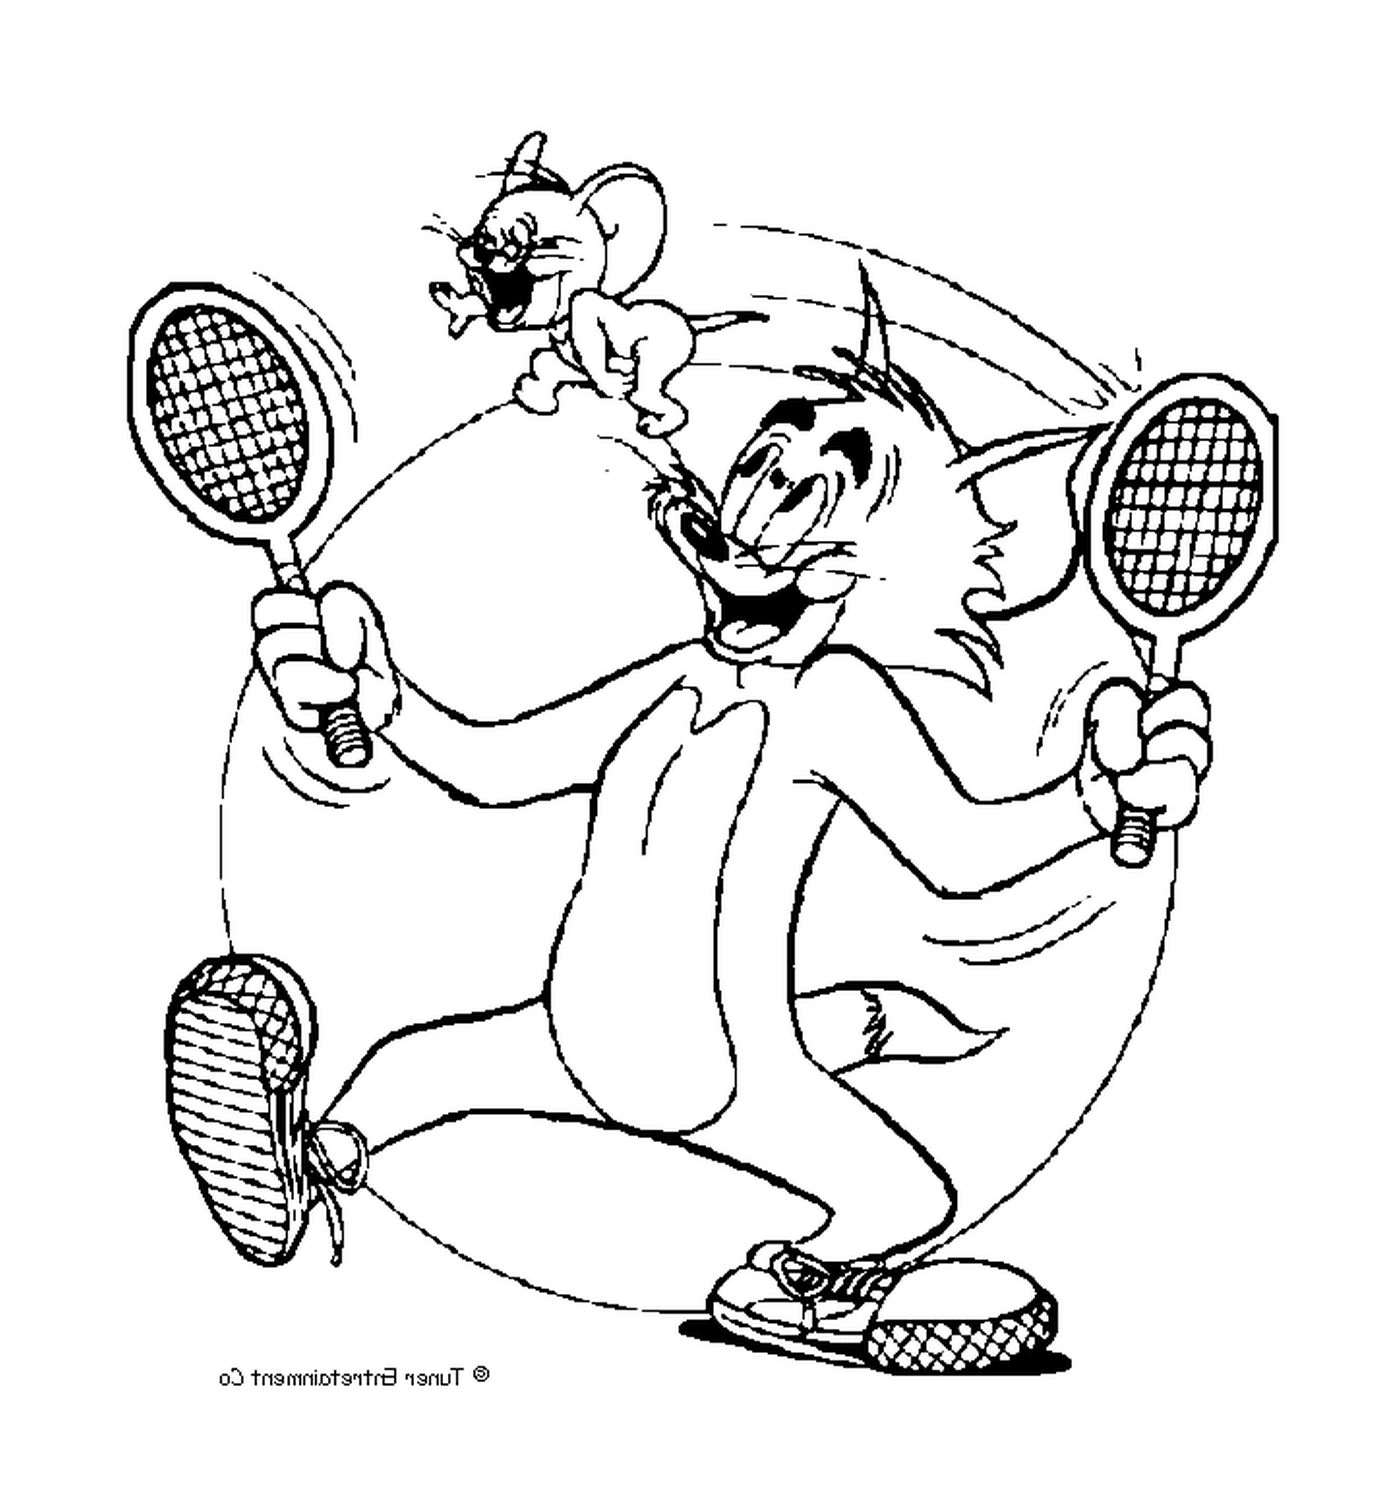 Tom joue au tennis avec Jerry comme balle